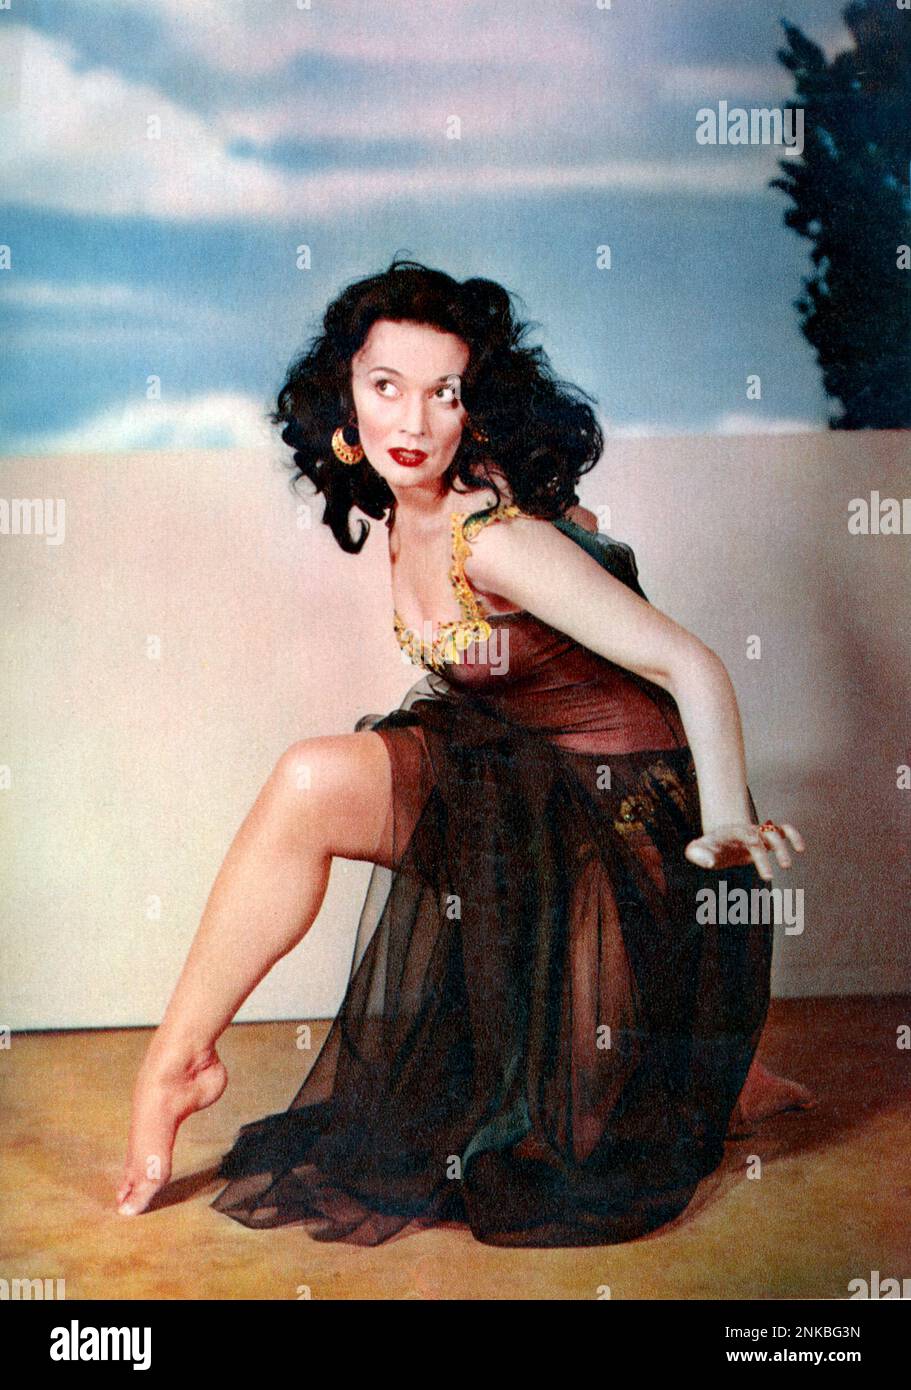 1953 c : The movie actress and dancer ballerina LUDMILLA TCHERINA in THE SIGN OF THE PAGAN  ( 1954 - La costa dei barbari ) by Douglas Sirk  - JEWEL - JEWELS - orecchini - earrings - oro - gioiello - gioielli -  DANCE - DANZA CLASSICA - BALLERINA - MUSICAL  ----  Archivio GBB Stock Photo